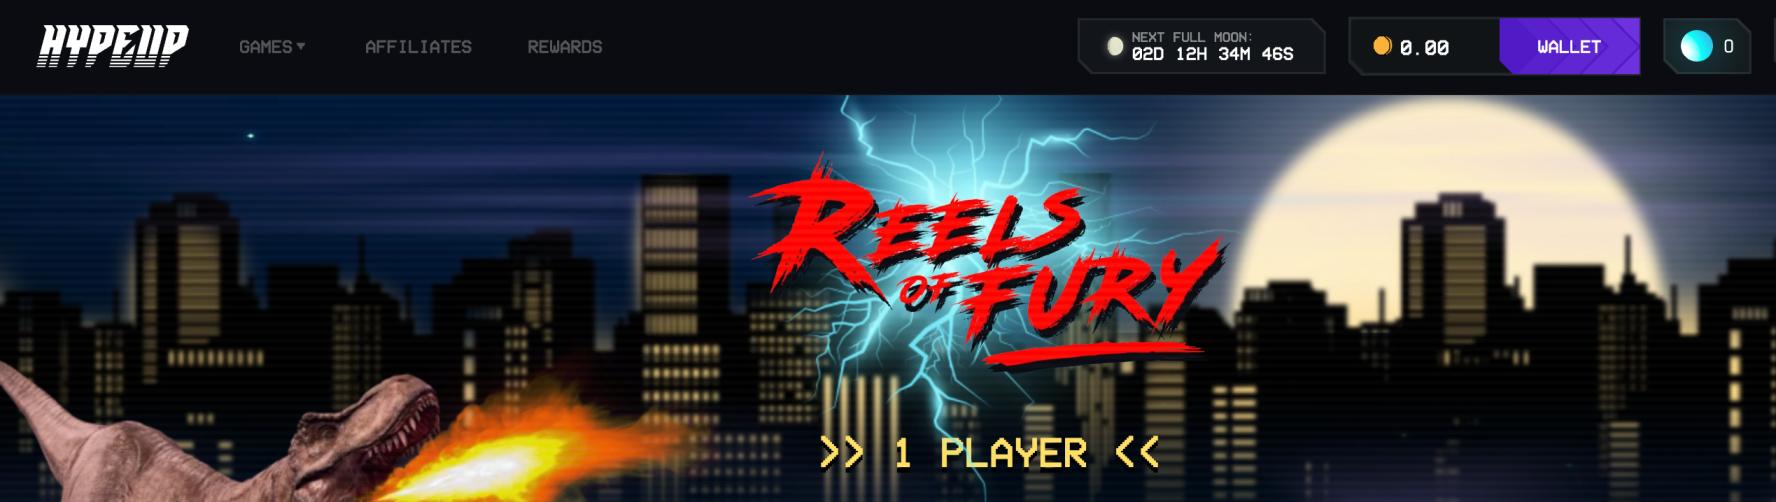 reels of fury